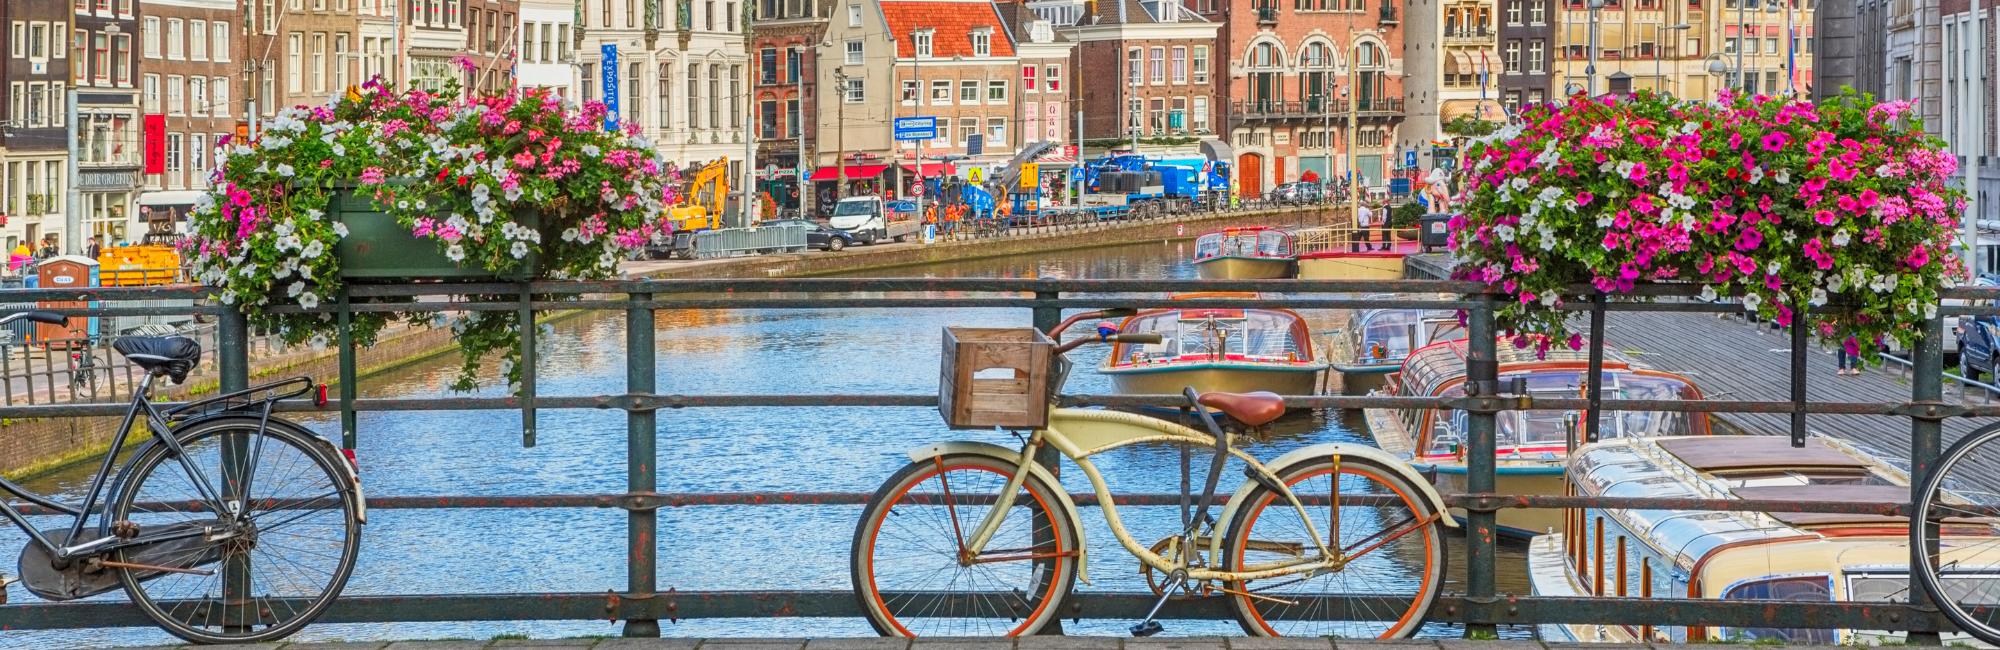 Amsterdam – Bruges - 8 days